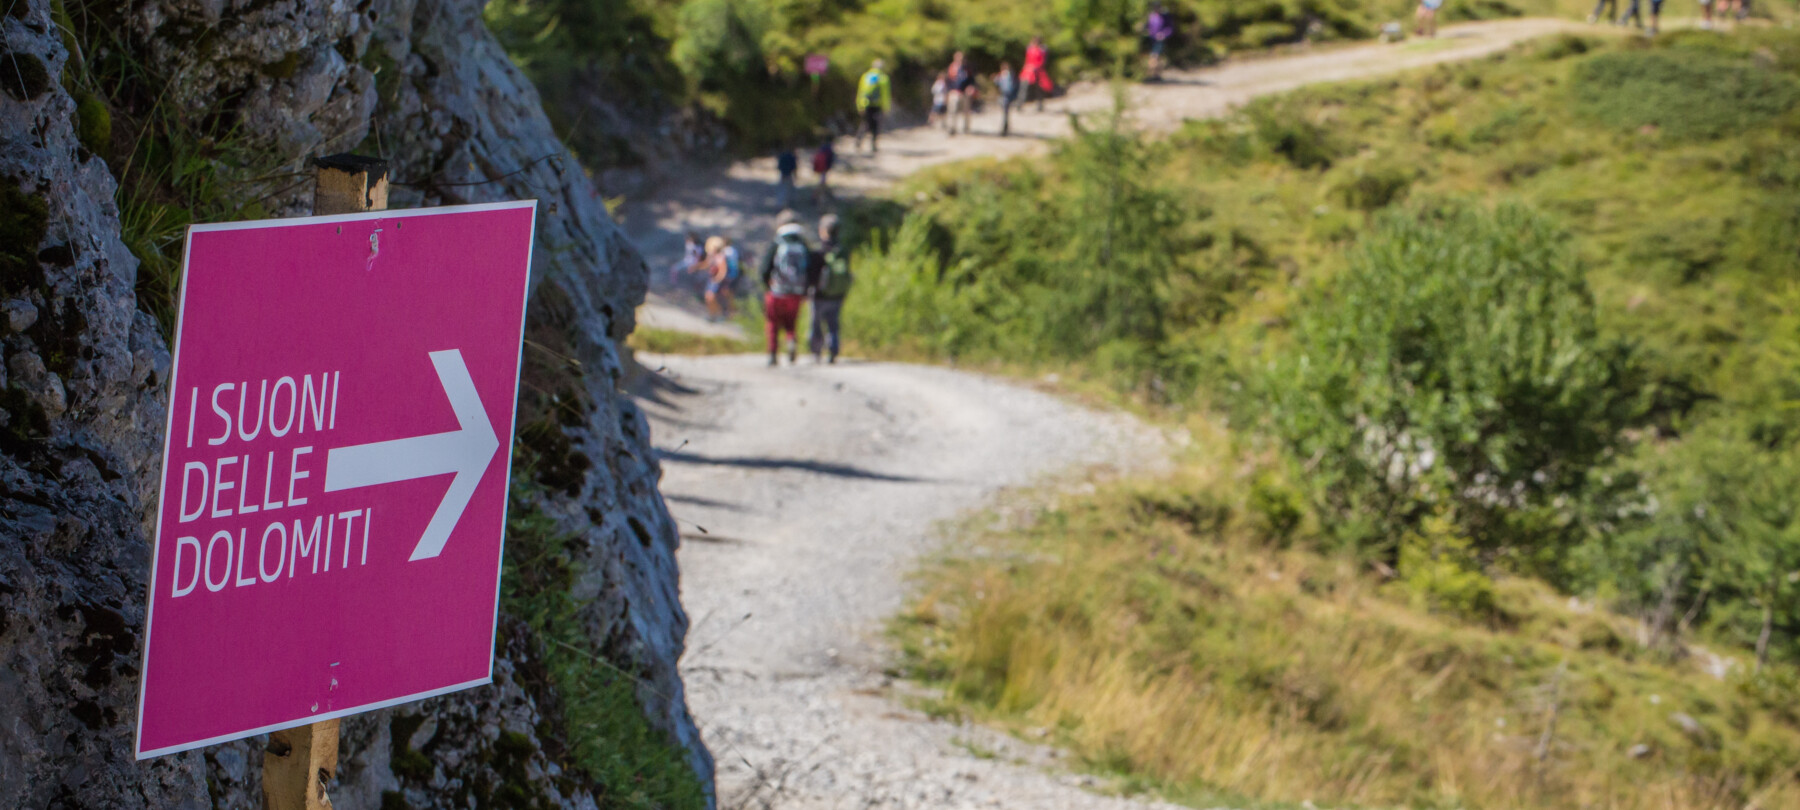 Das Festival 'I Suoni delle Dolomiti' – zu Deutsch 'Die Klänge der Dolomiten' kehrt 2021 mit einigen Neuigkeiten in die Berge des Trentino zurück